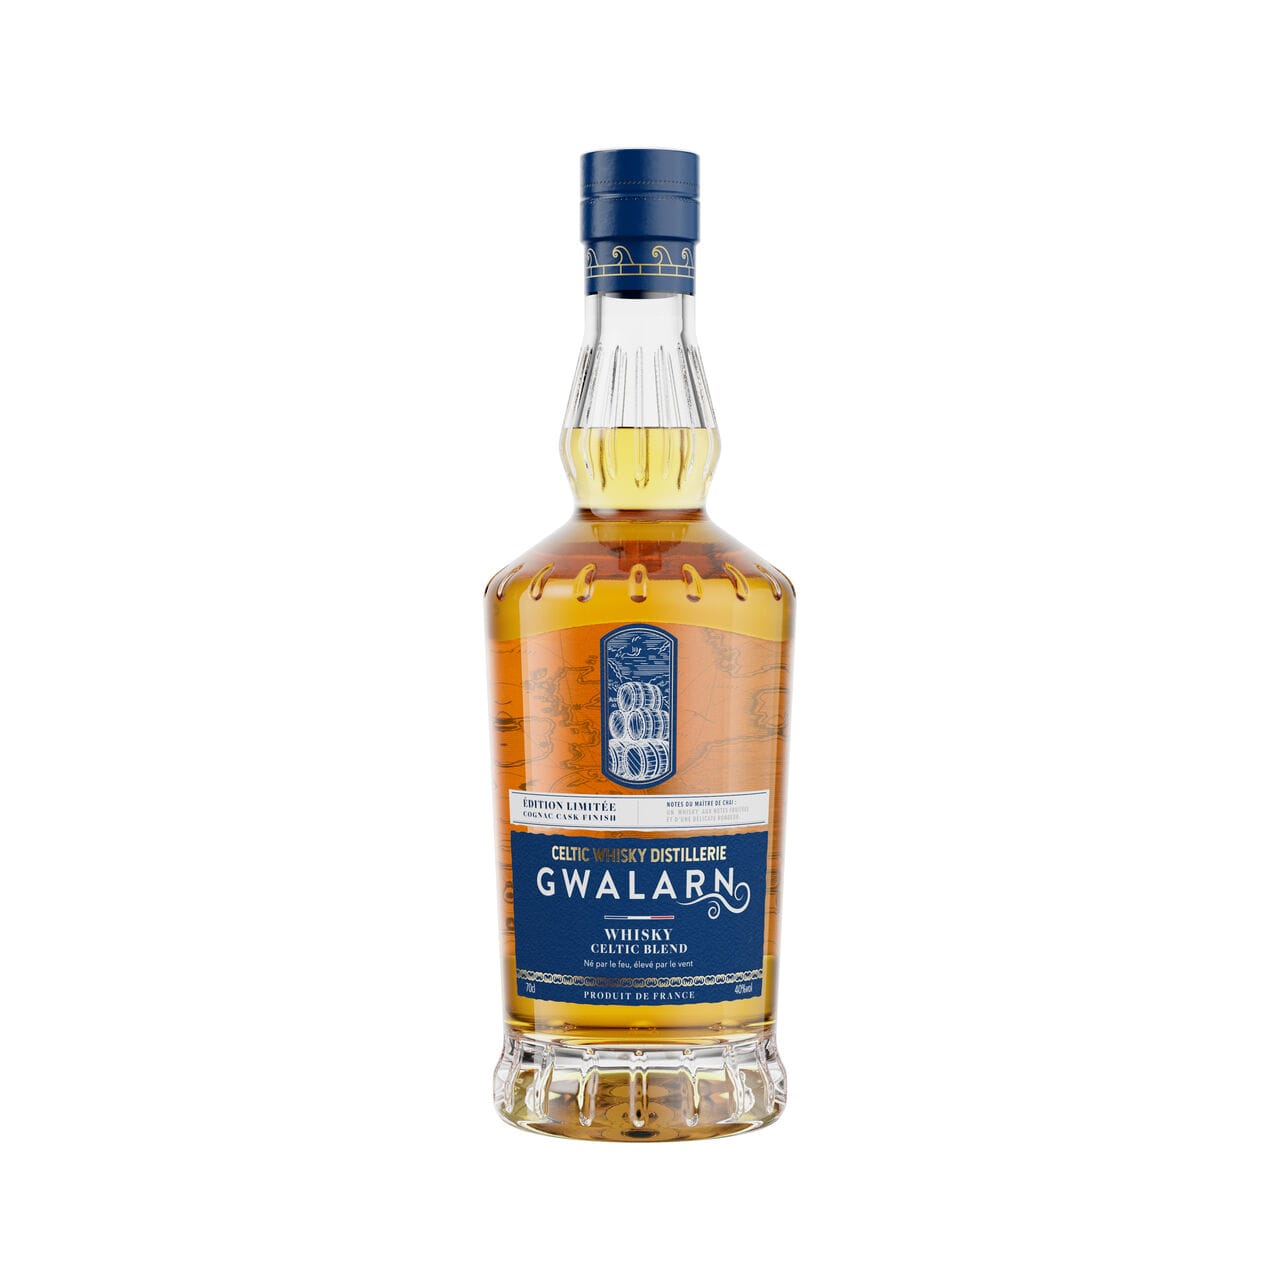 Celtic Whisky Distillerie dévoile deux nouvelles expressions Gwalarn